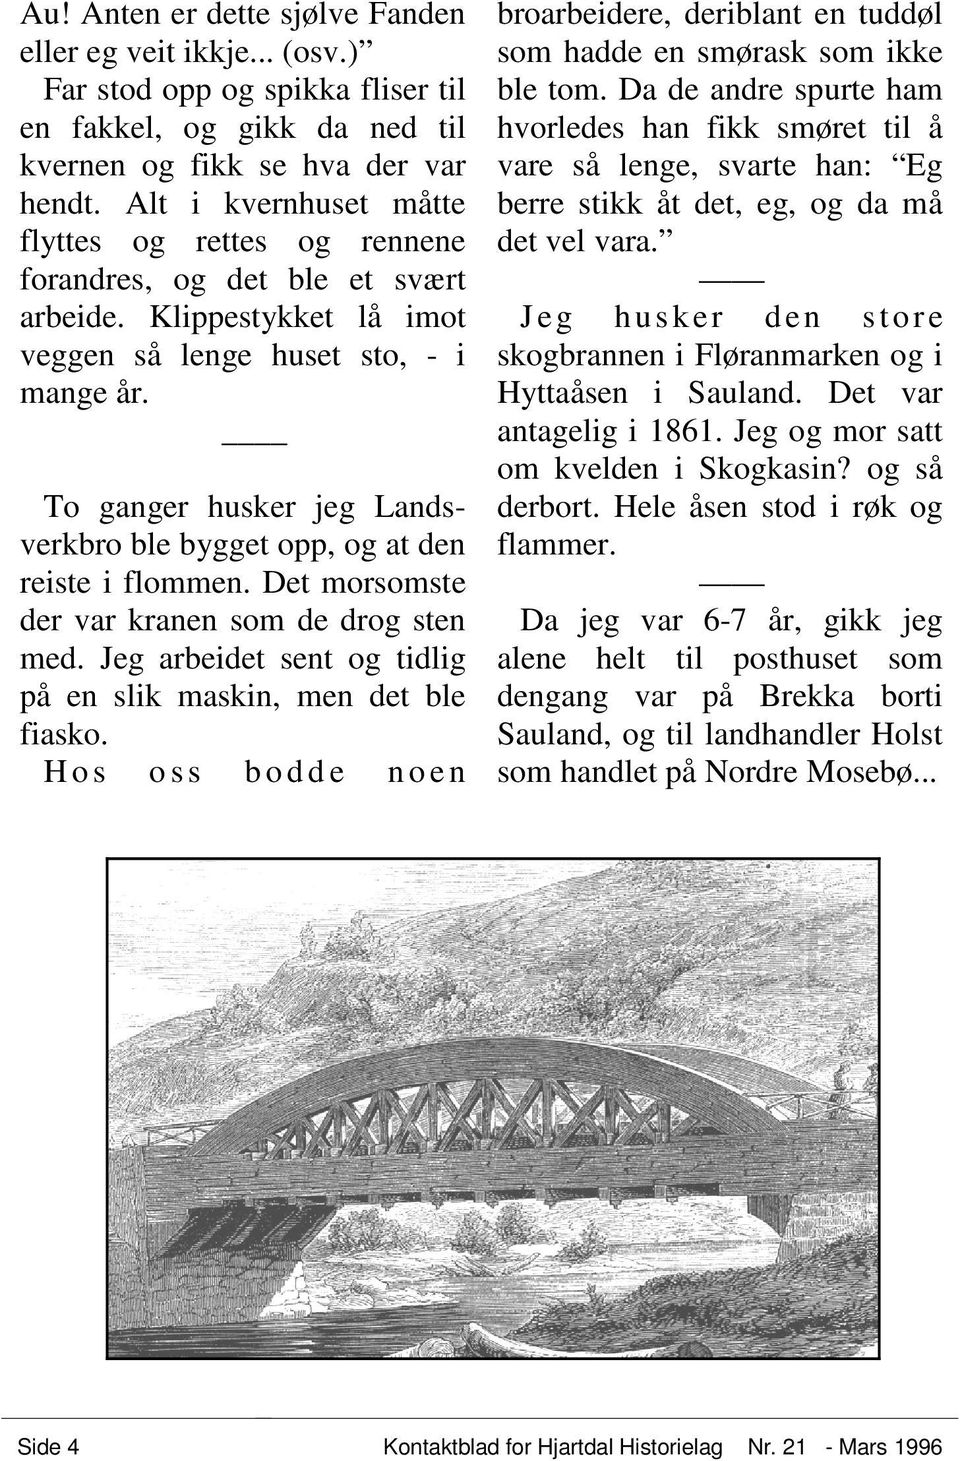 To ganger husker jeg Landsverkbro ble bygget opp, og at den reiste i flommen. Det morsomste der var kranen som de drog sten med. Jeg arbeidet sent og tidlig på en slik maskin, men det ble fiasko.